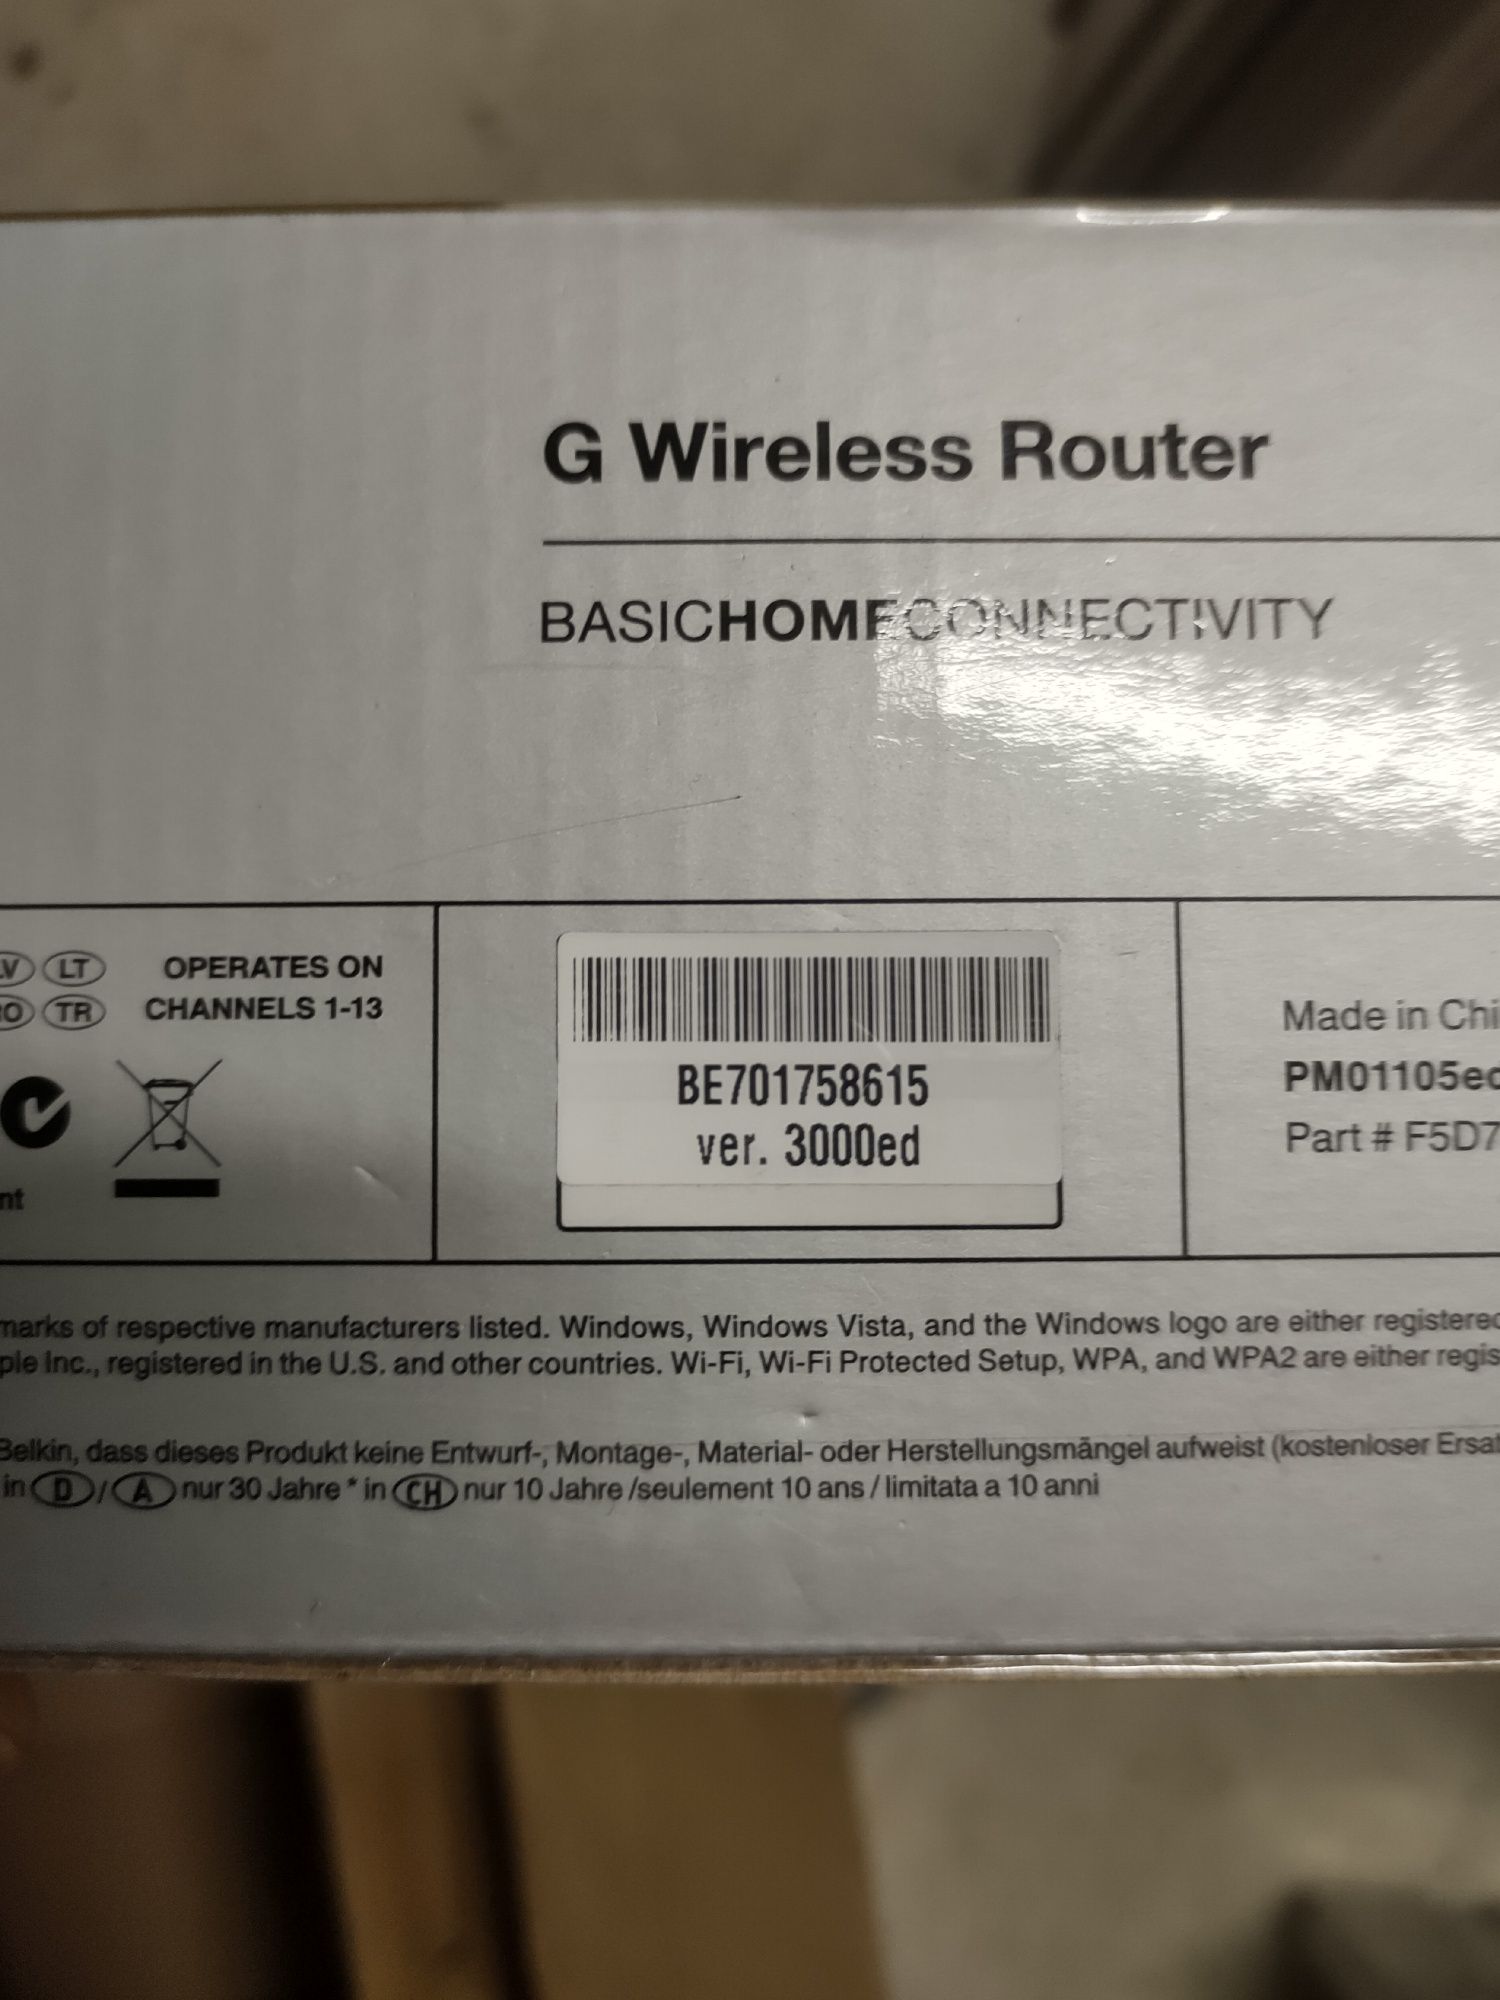 Router bezprzewodowy Belkin G Wireless Router